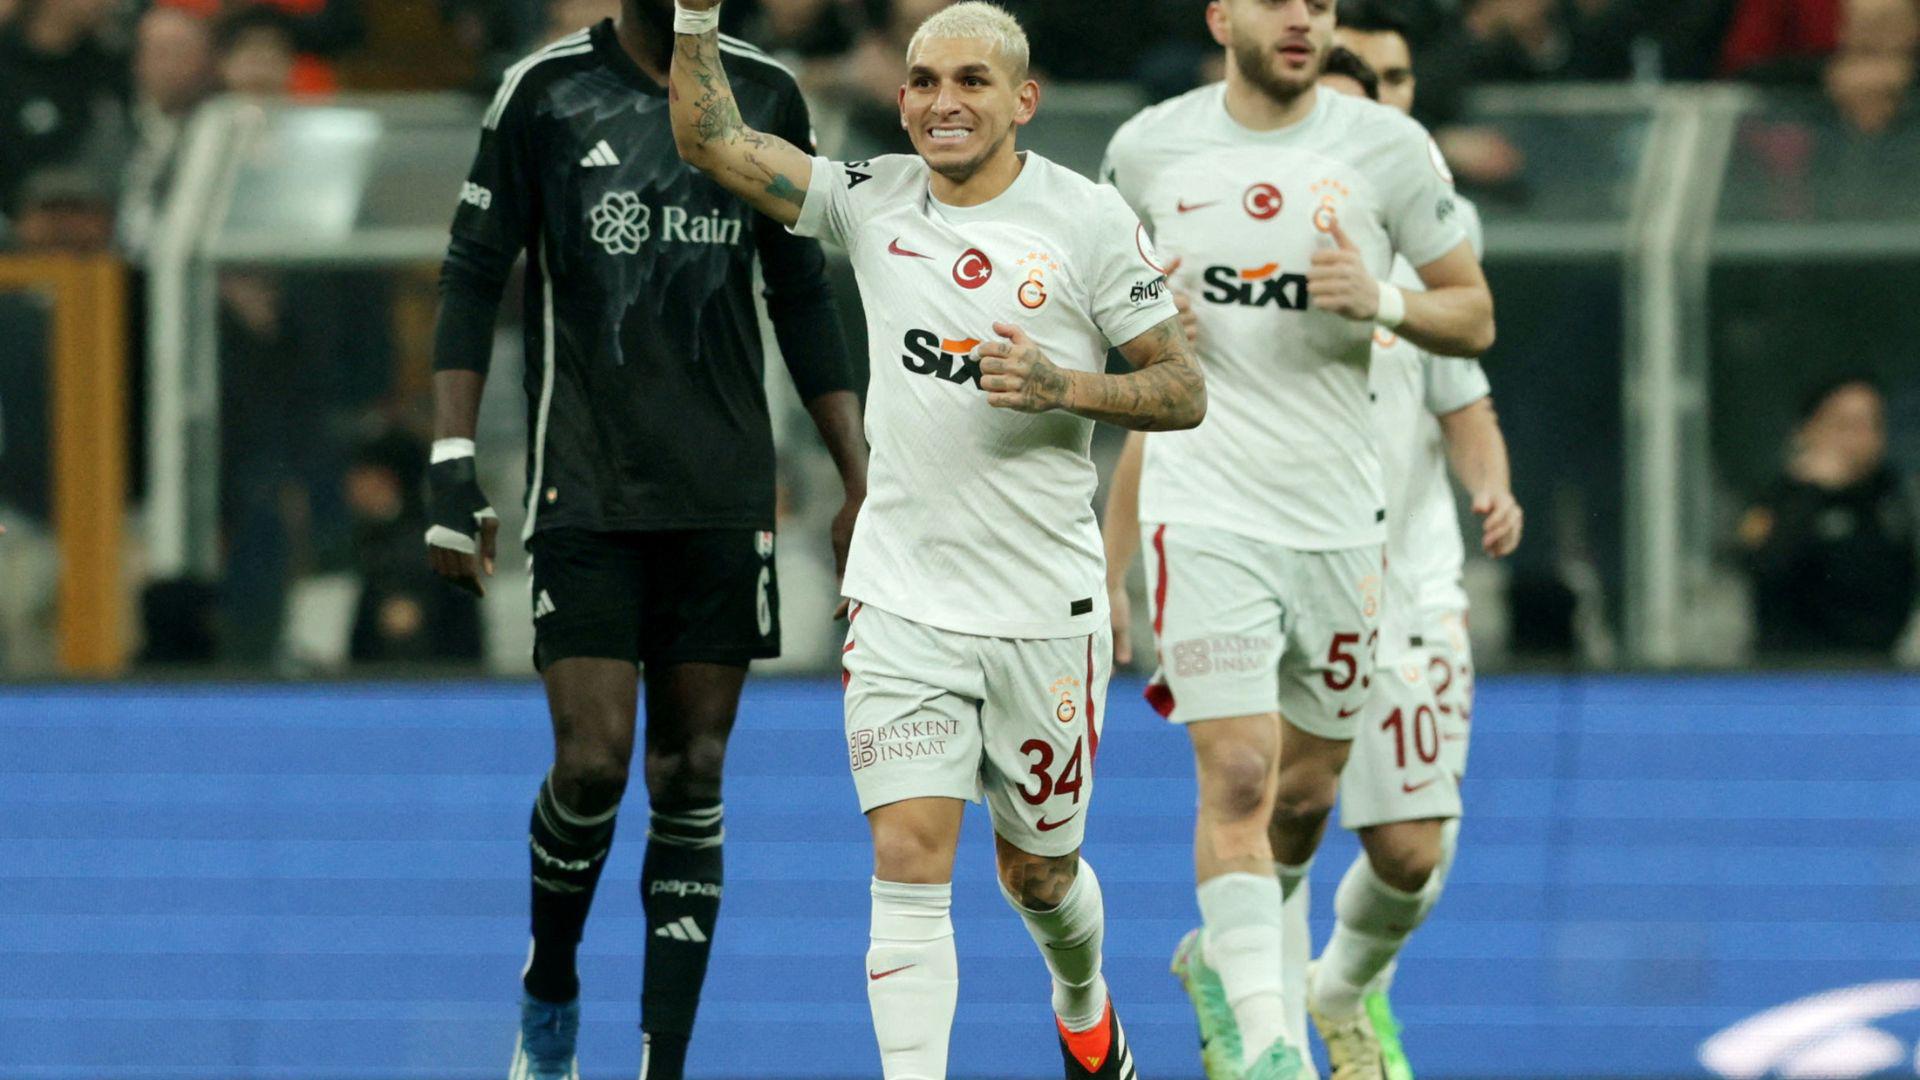 VIDEO | SüperLig Highlights: Besiktas vs Galatasaray